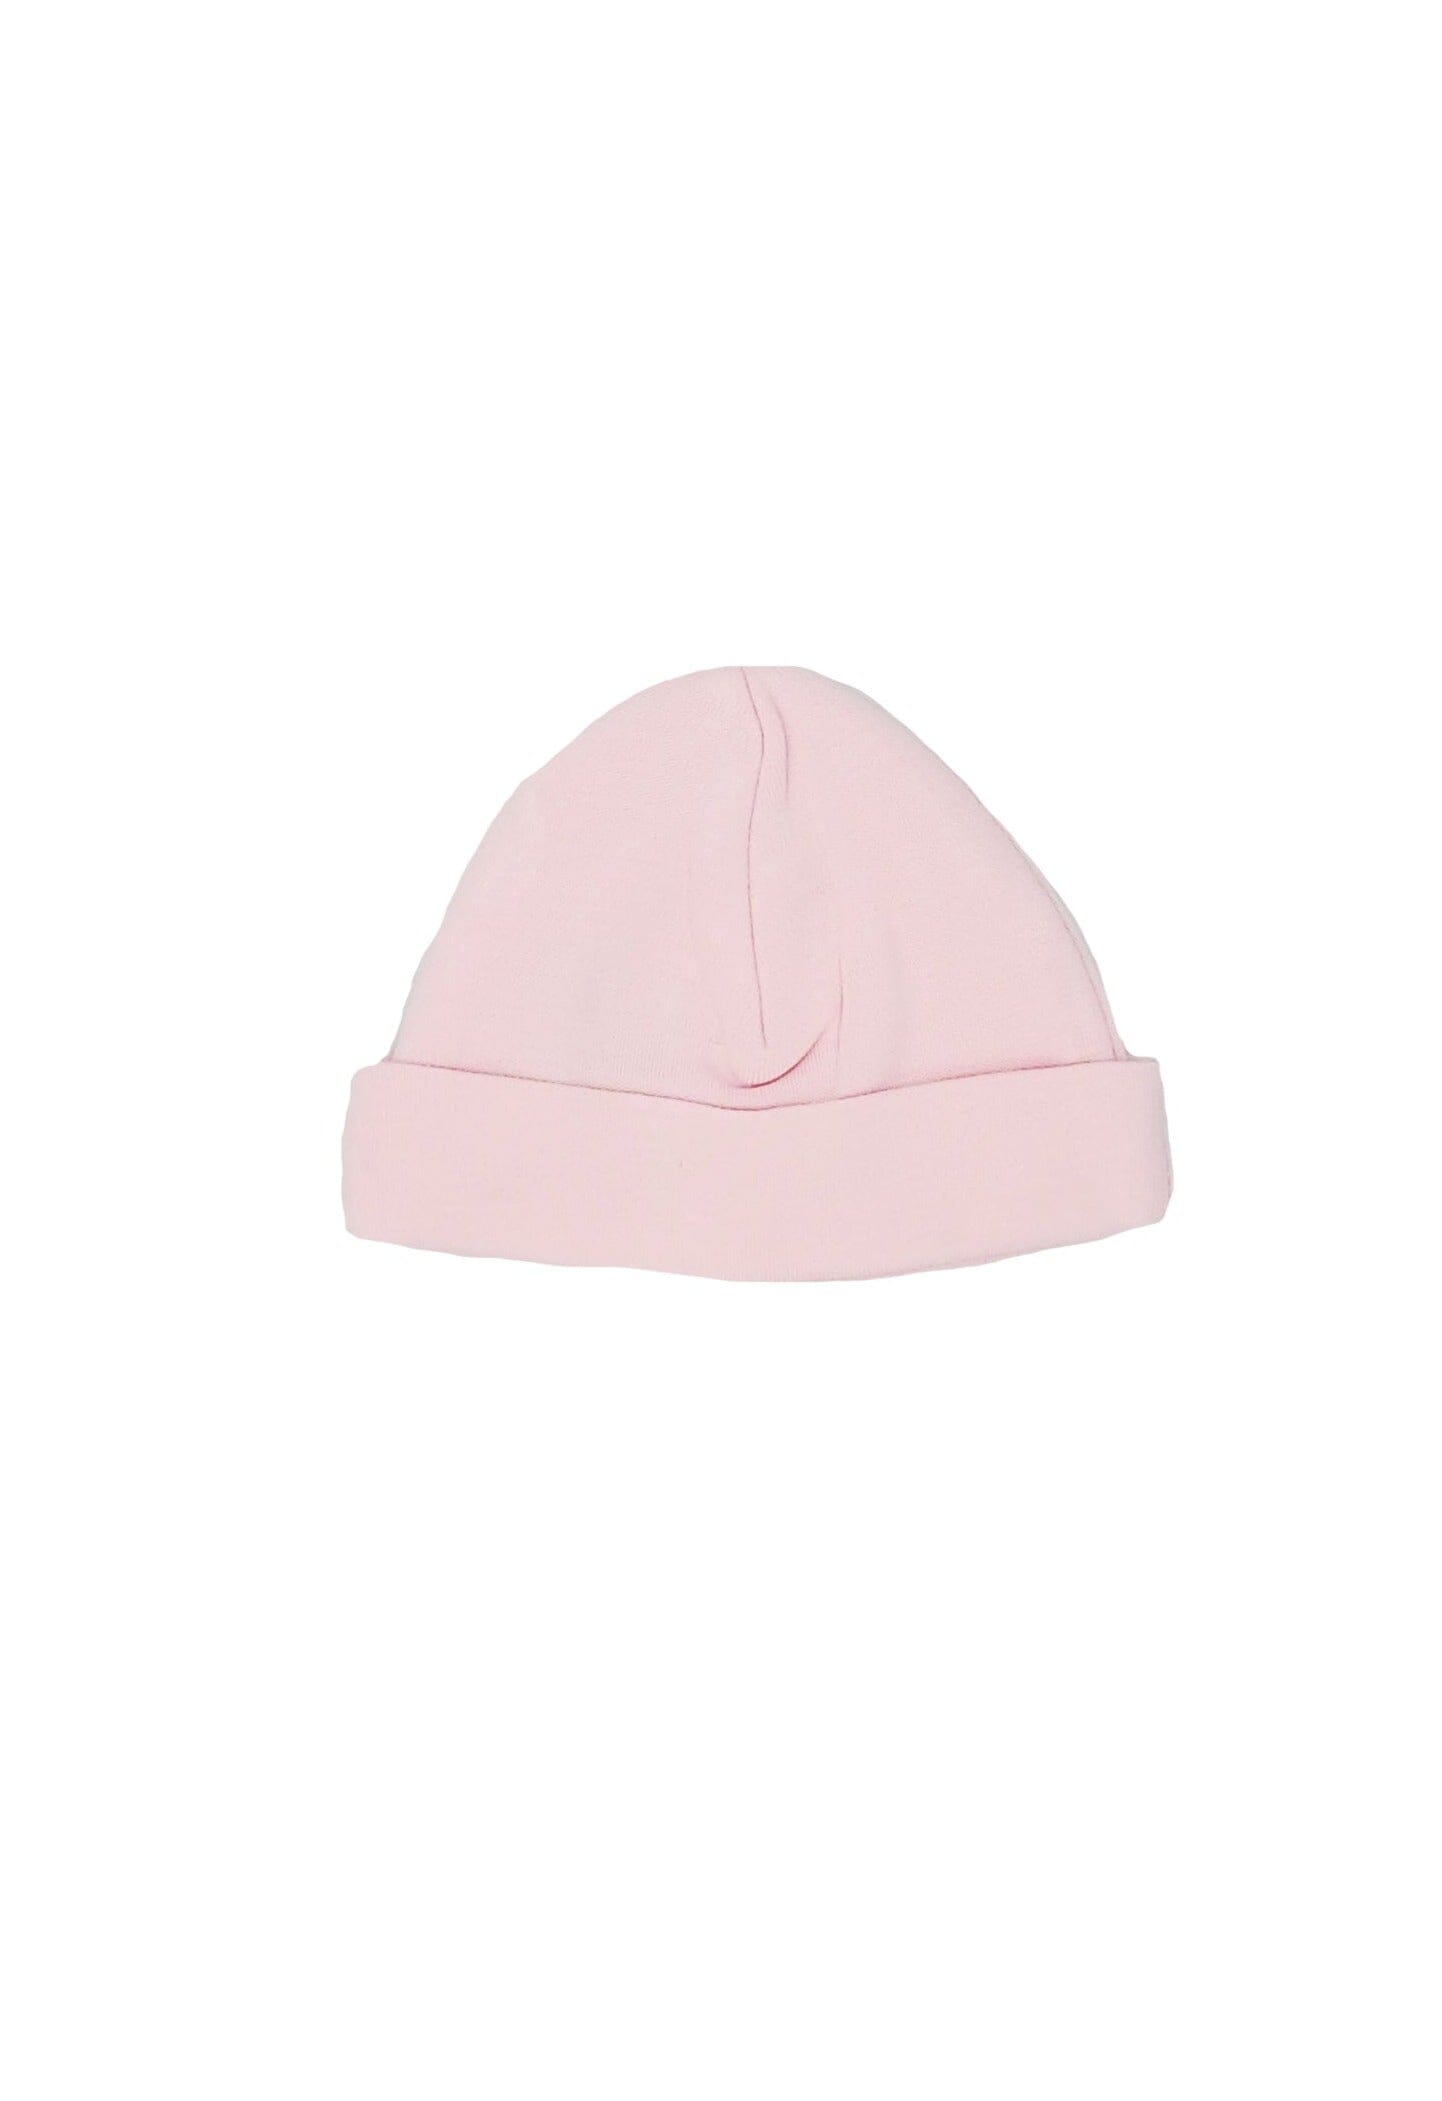 Pink Round Premature Baby Hat - Hat - Dandelion